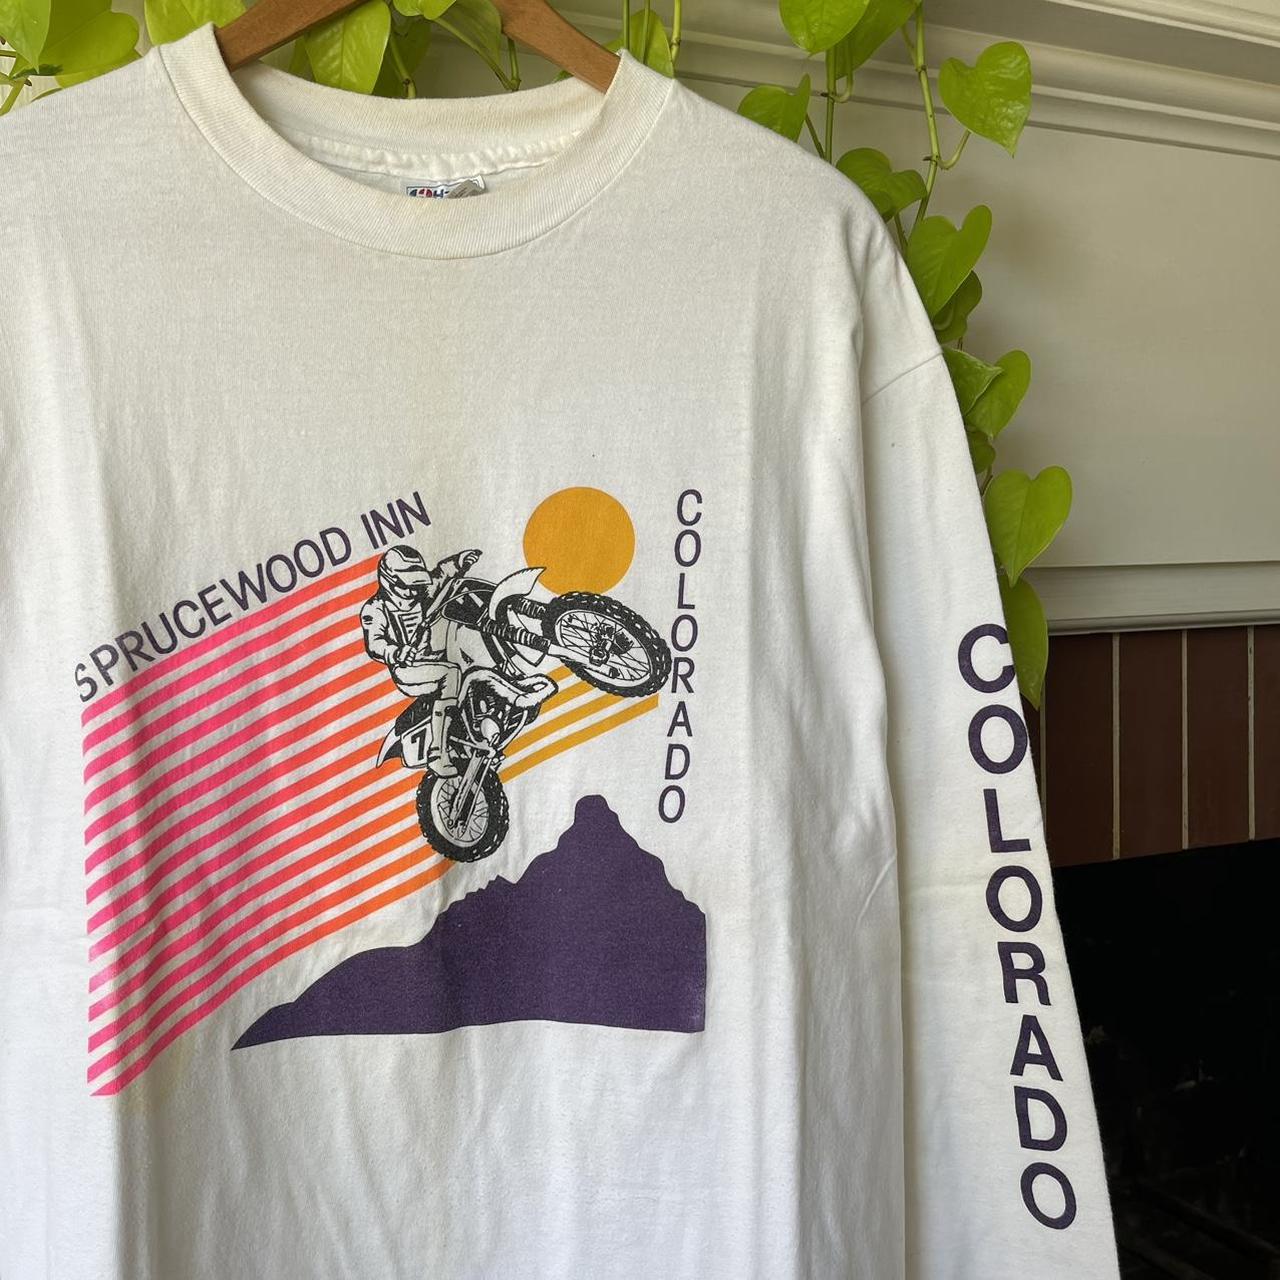 Vintage 80s 90s Sprucewood Inn, Colorado dirtbike